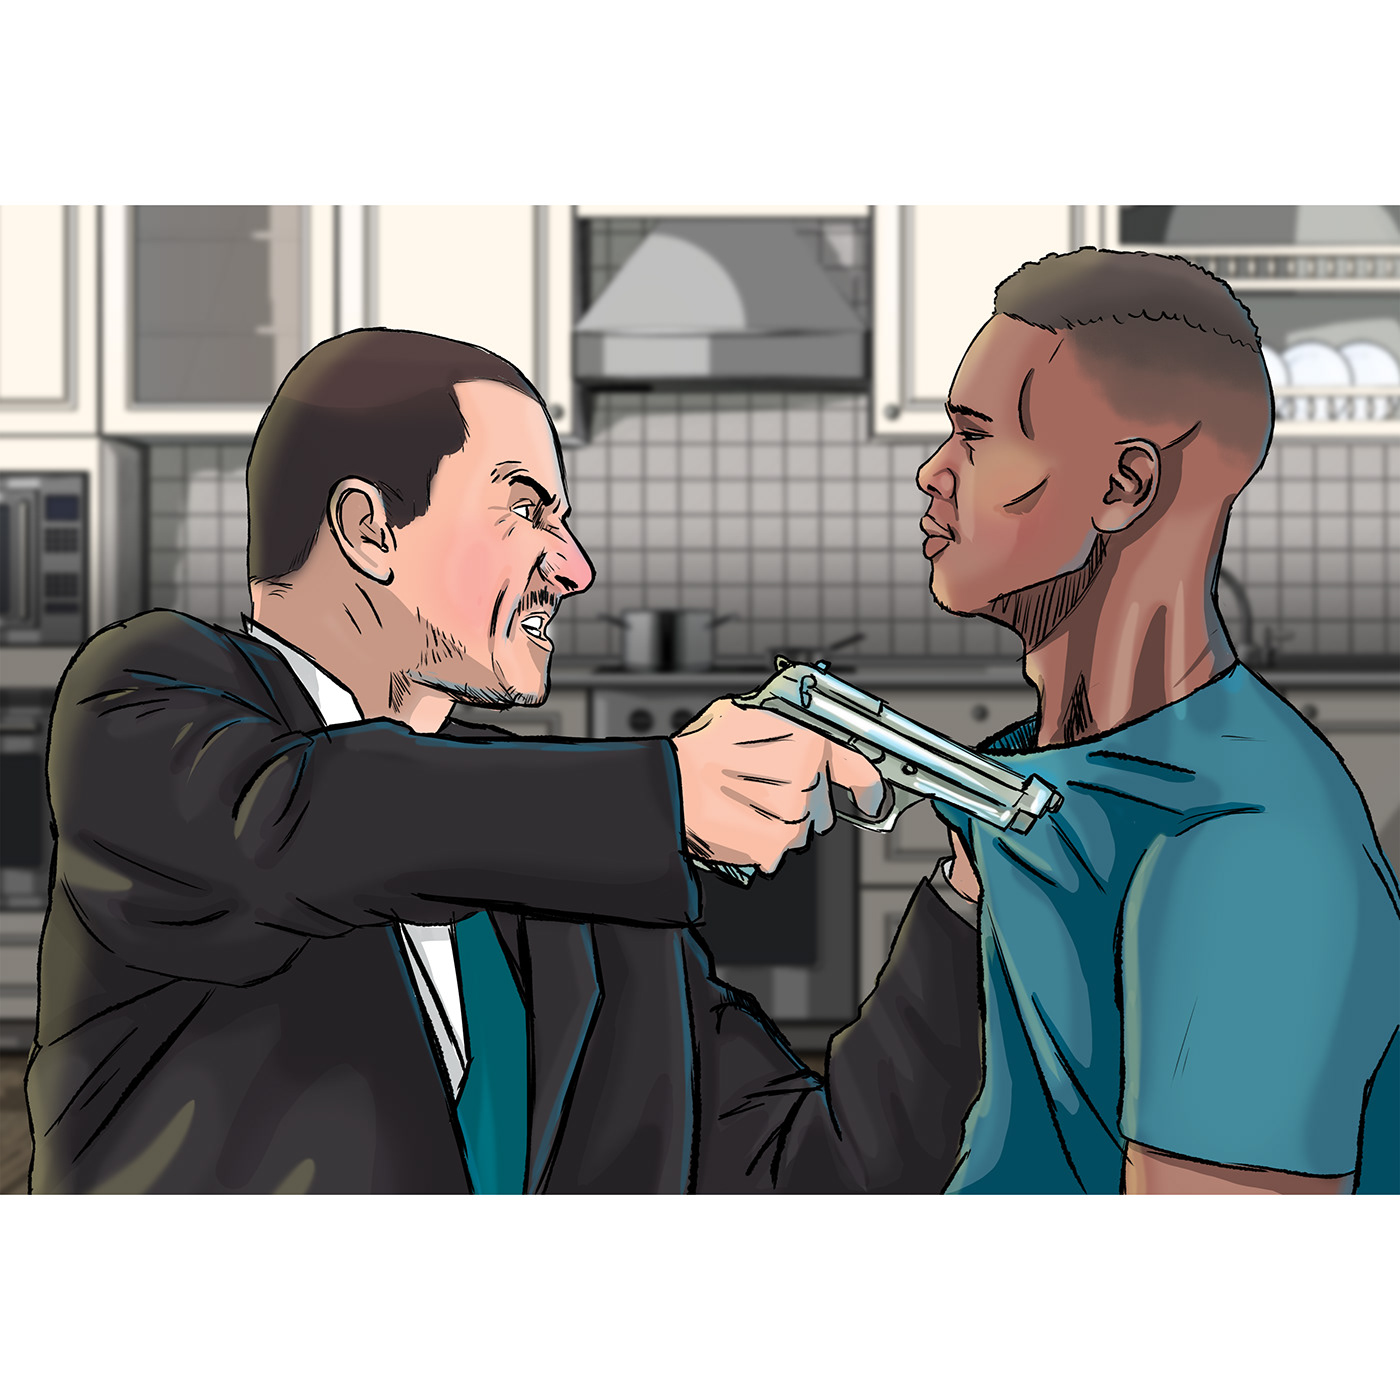 comics Digital Art  Gun realistic violence